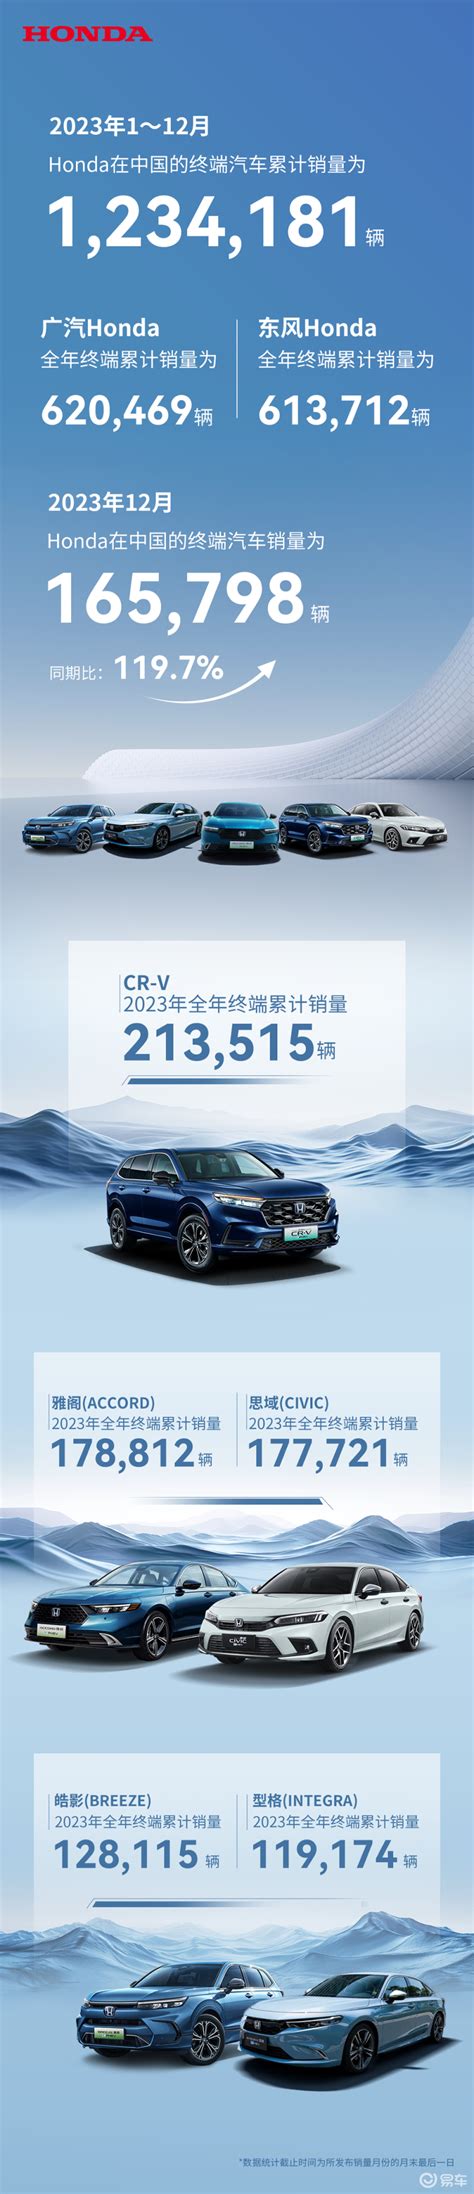 本田中国12月销量165798辆 2023年累计销量突破123万辆-新浪汽车